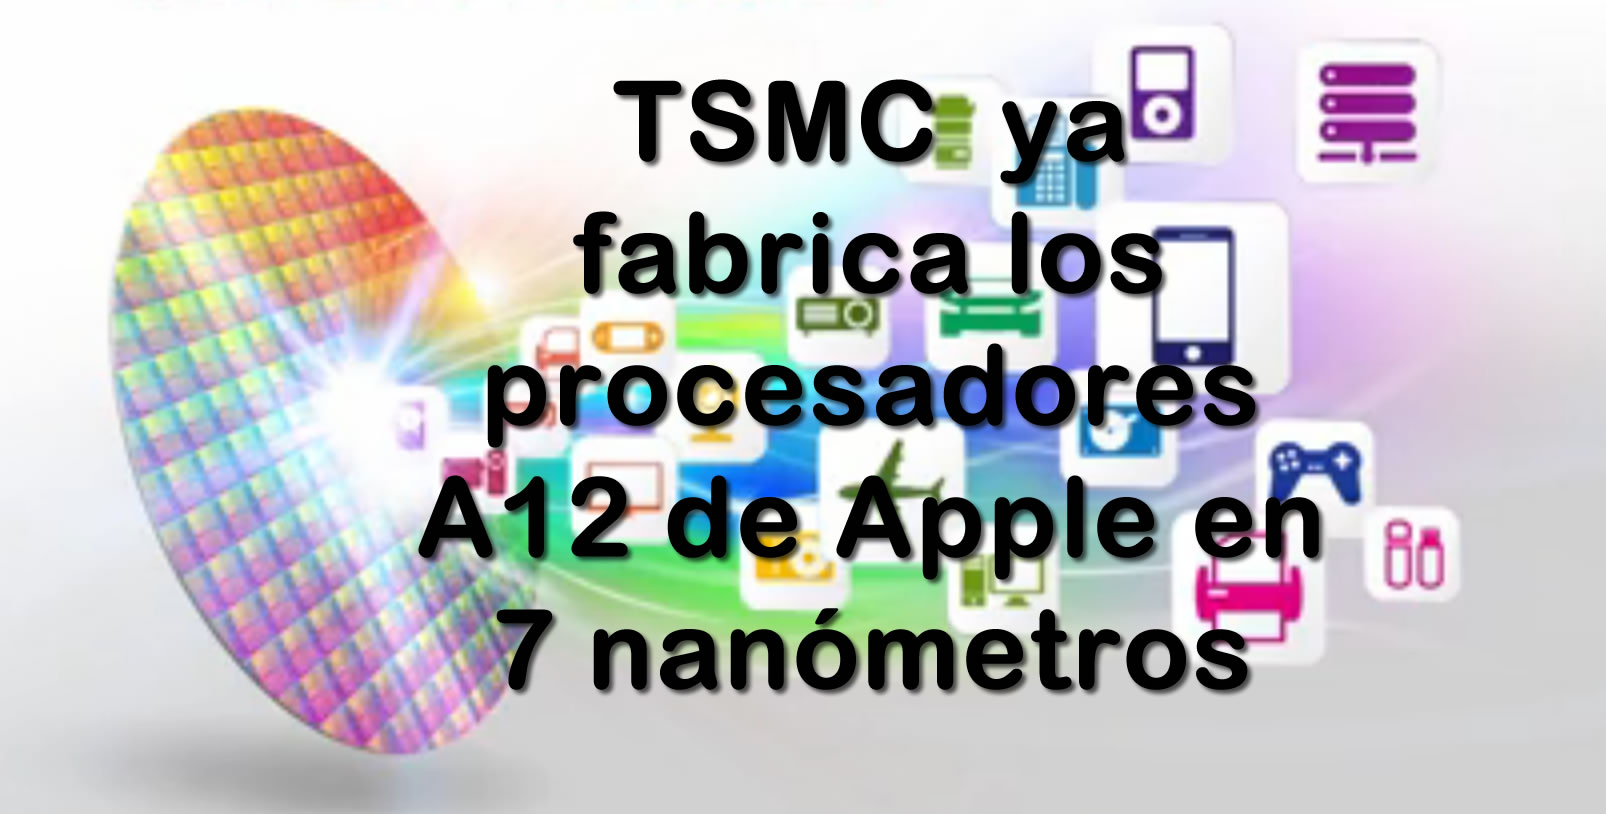 TSMC fabricar los procesadores A12 del prximo iPhone @ 7 nm